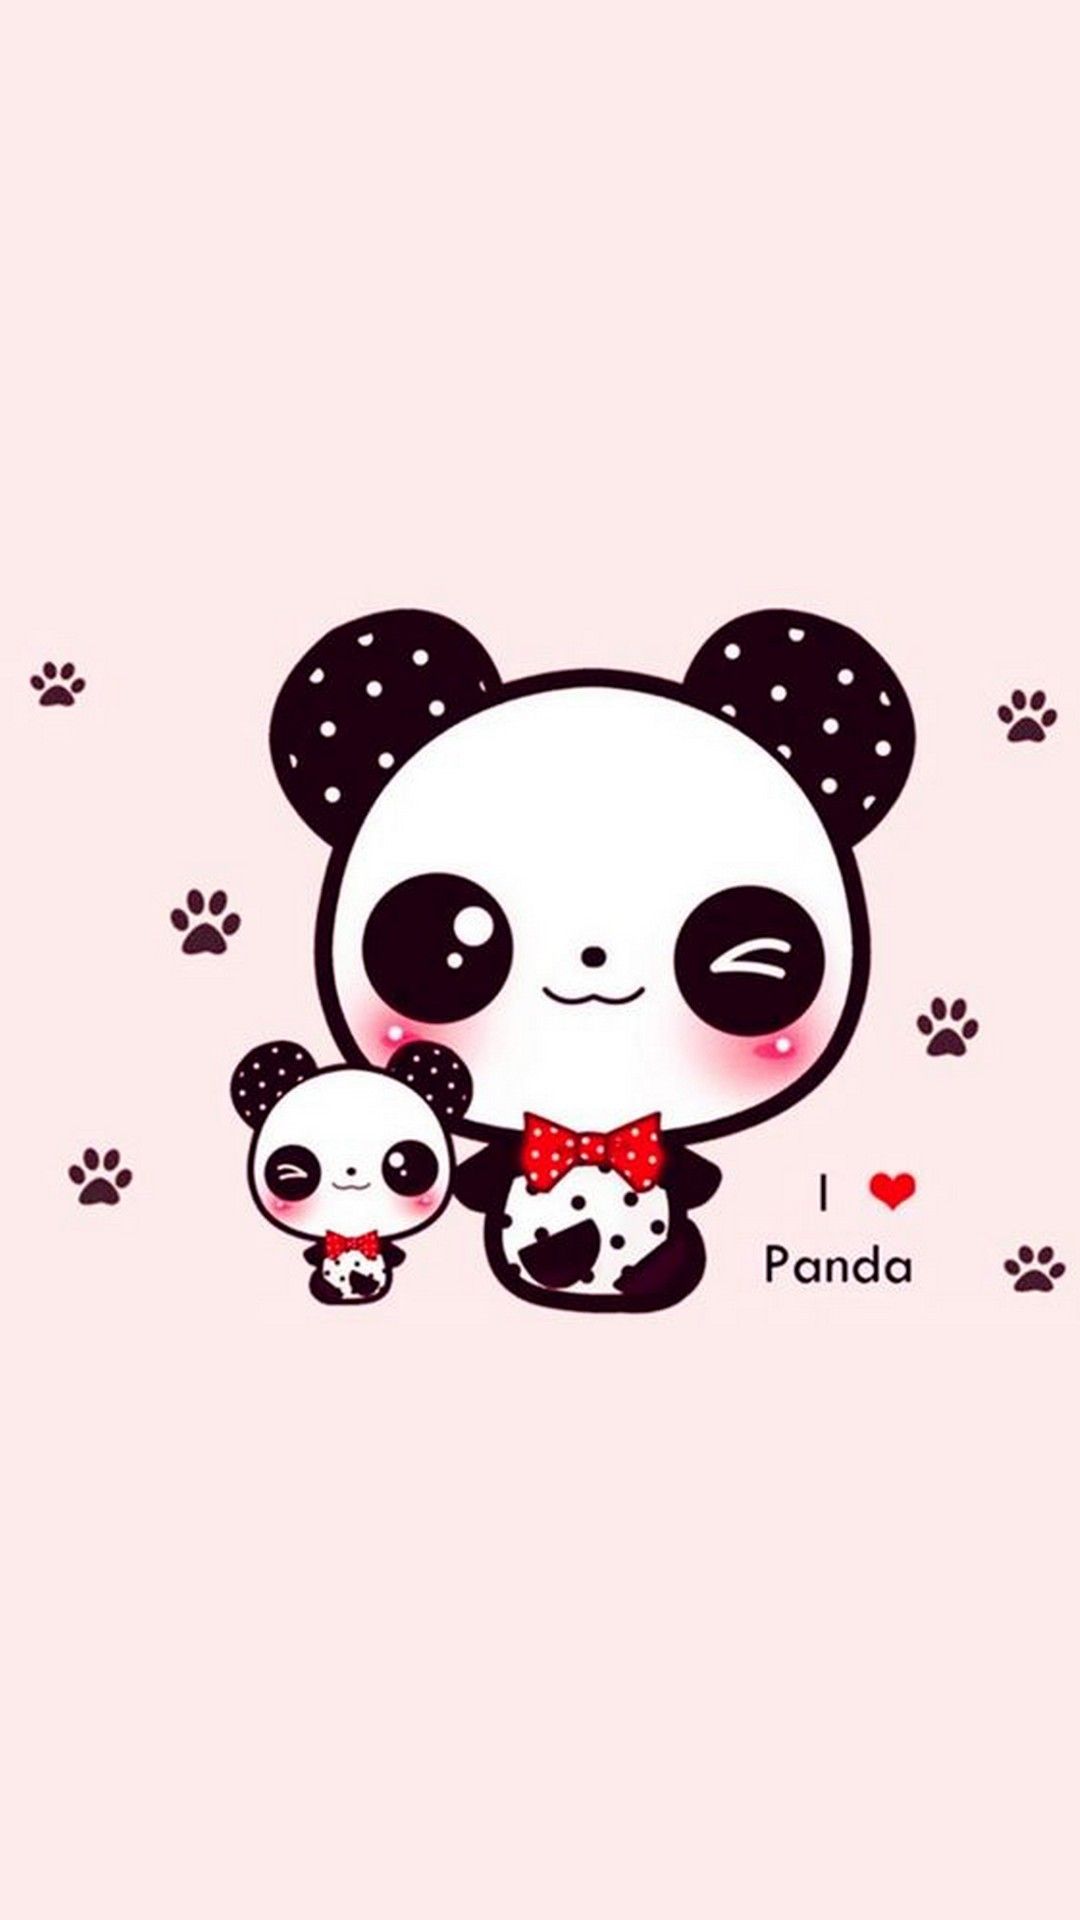 Free download Cute Panda Wallpaper For iPhone iPhoneWallpaper Cute panda [1080x1920] for your Desktop, Mobile & Tablet. Explore Cute Pandas Wallpaper. Cute Pandas Wallpaper, Cute Pandas Wallpaper, Cute Wallpaper of Pandas